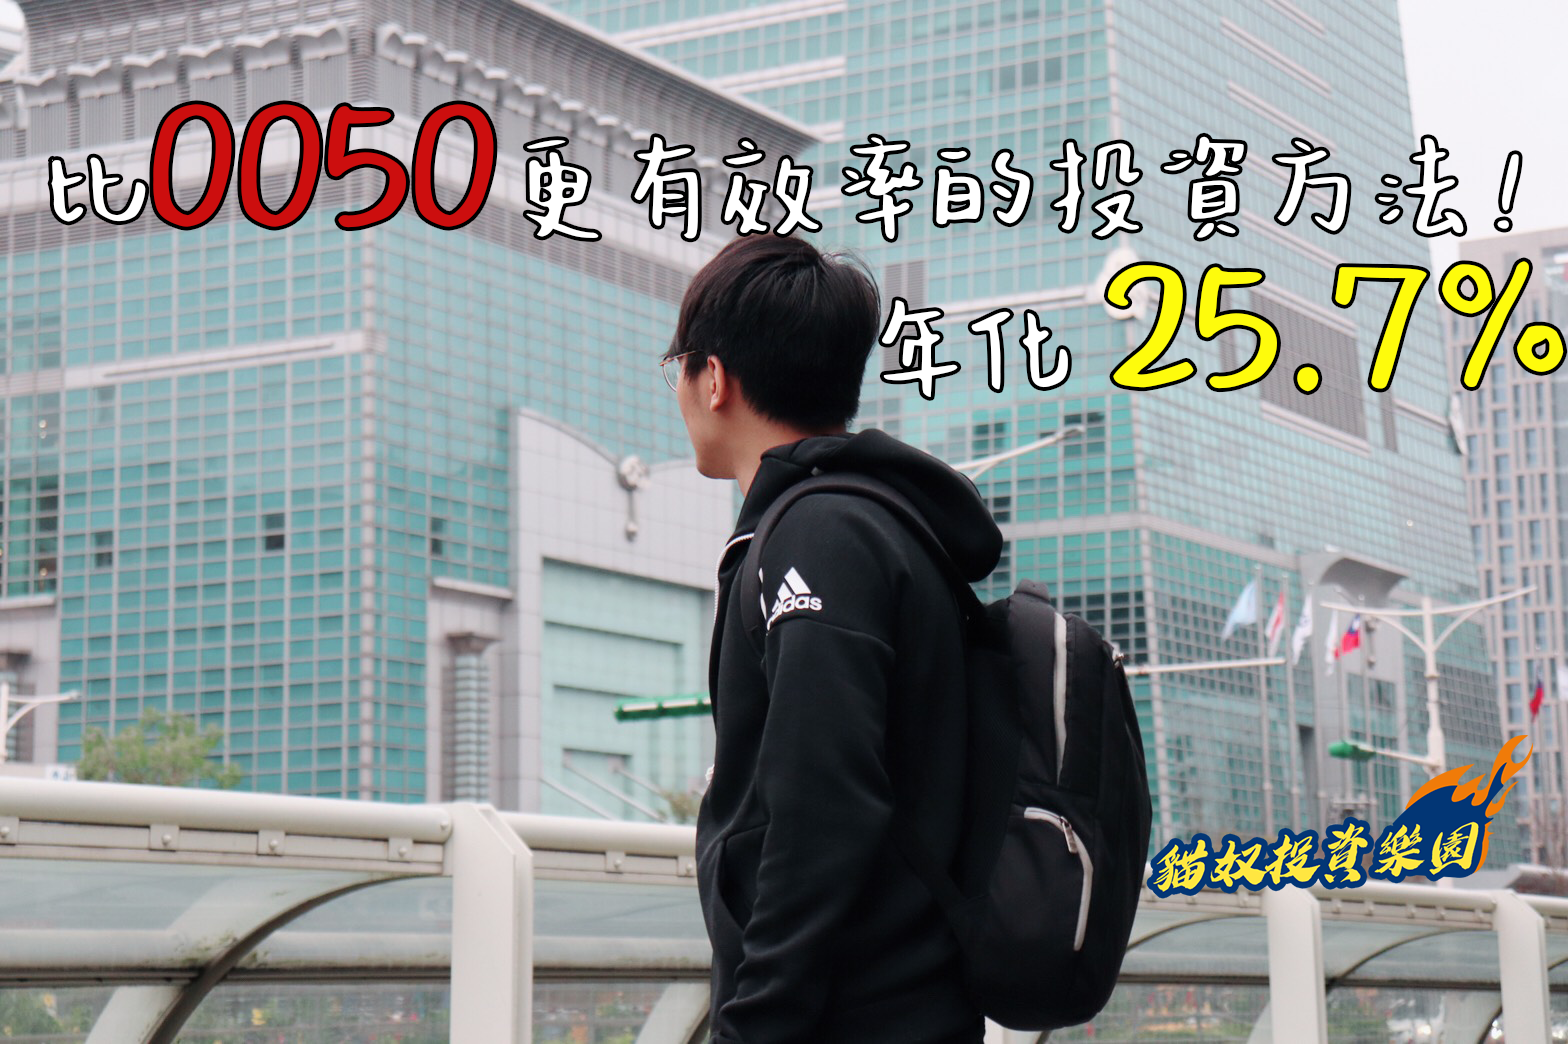 【進階實戰篇】比 元大台灣50(0050) 更有效率的投資方法，年化報酬率達 25.7%！